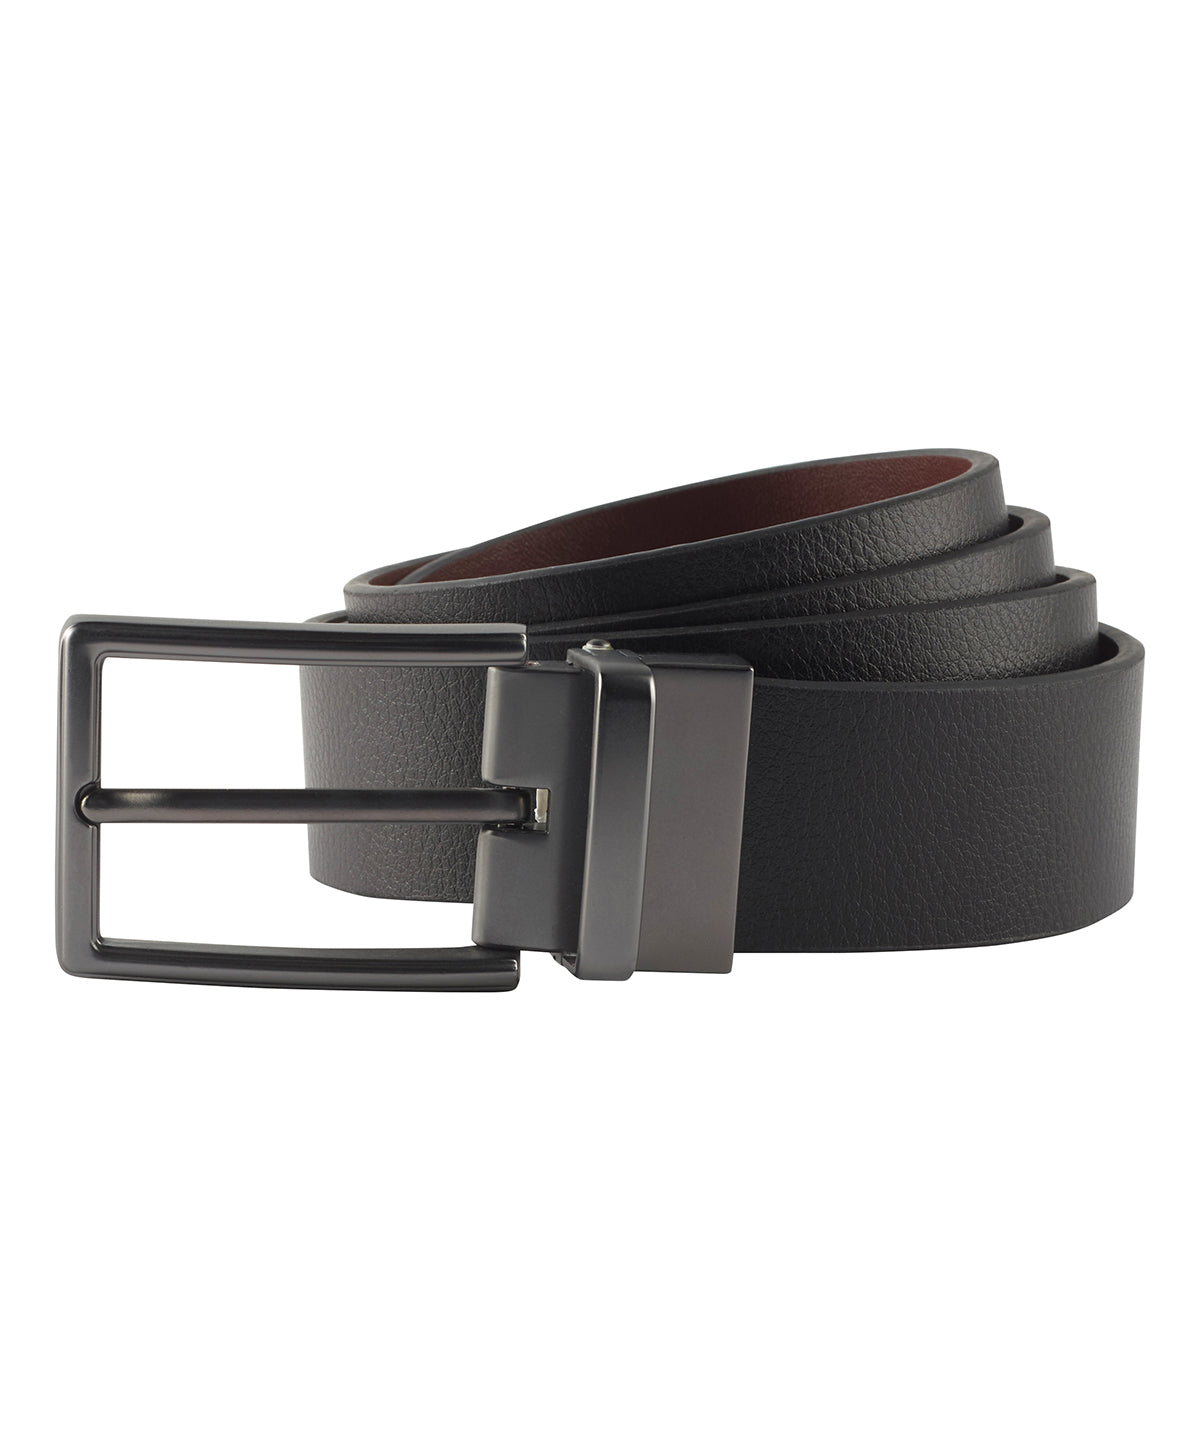 Belti - Men's Two-way Leather Belt